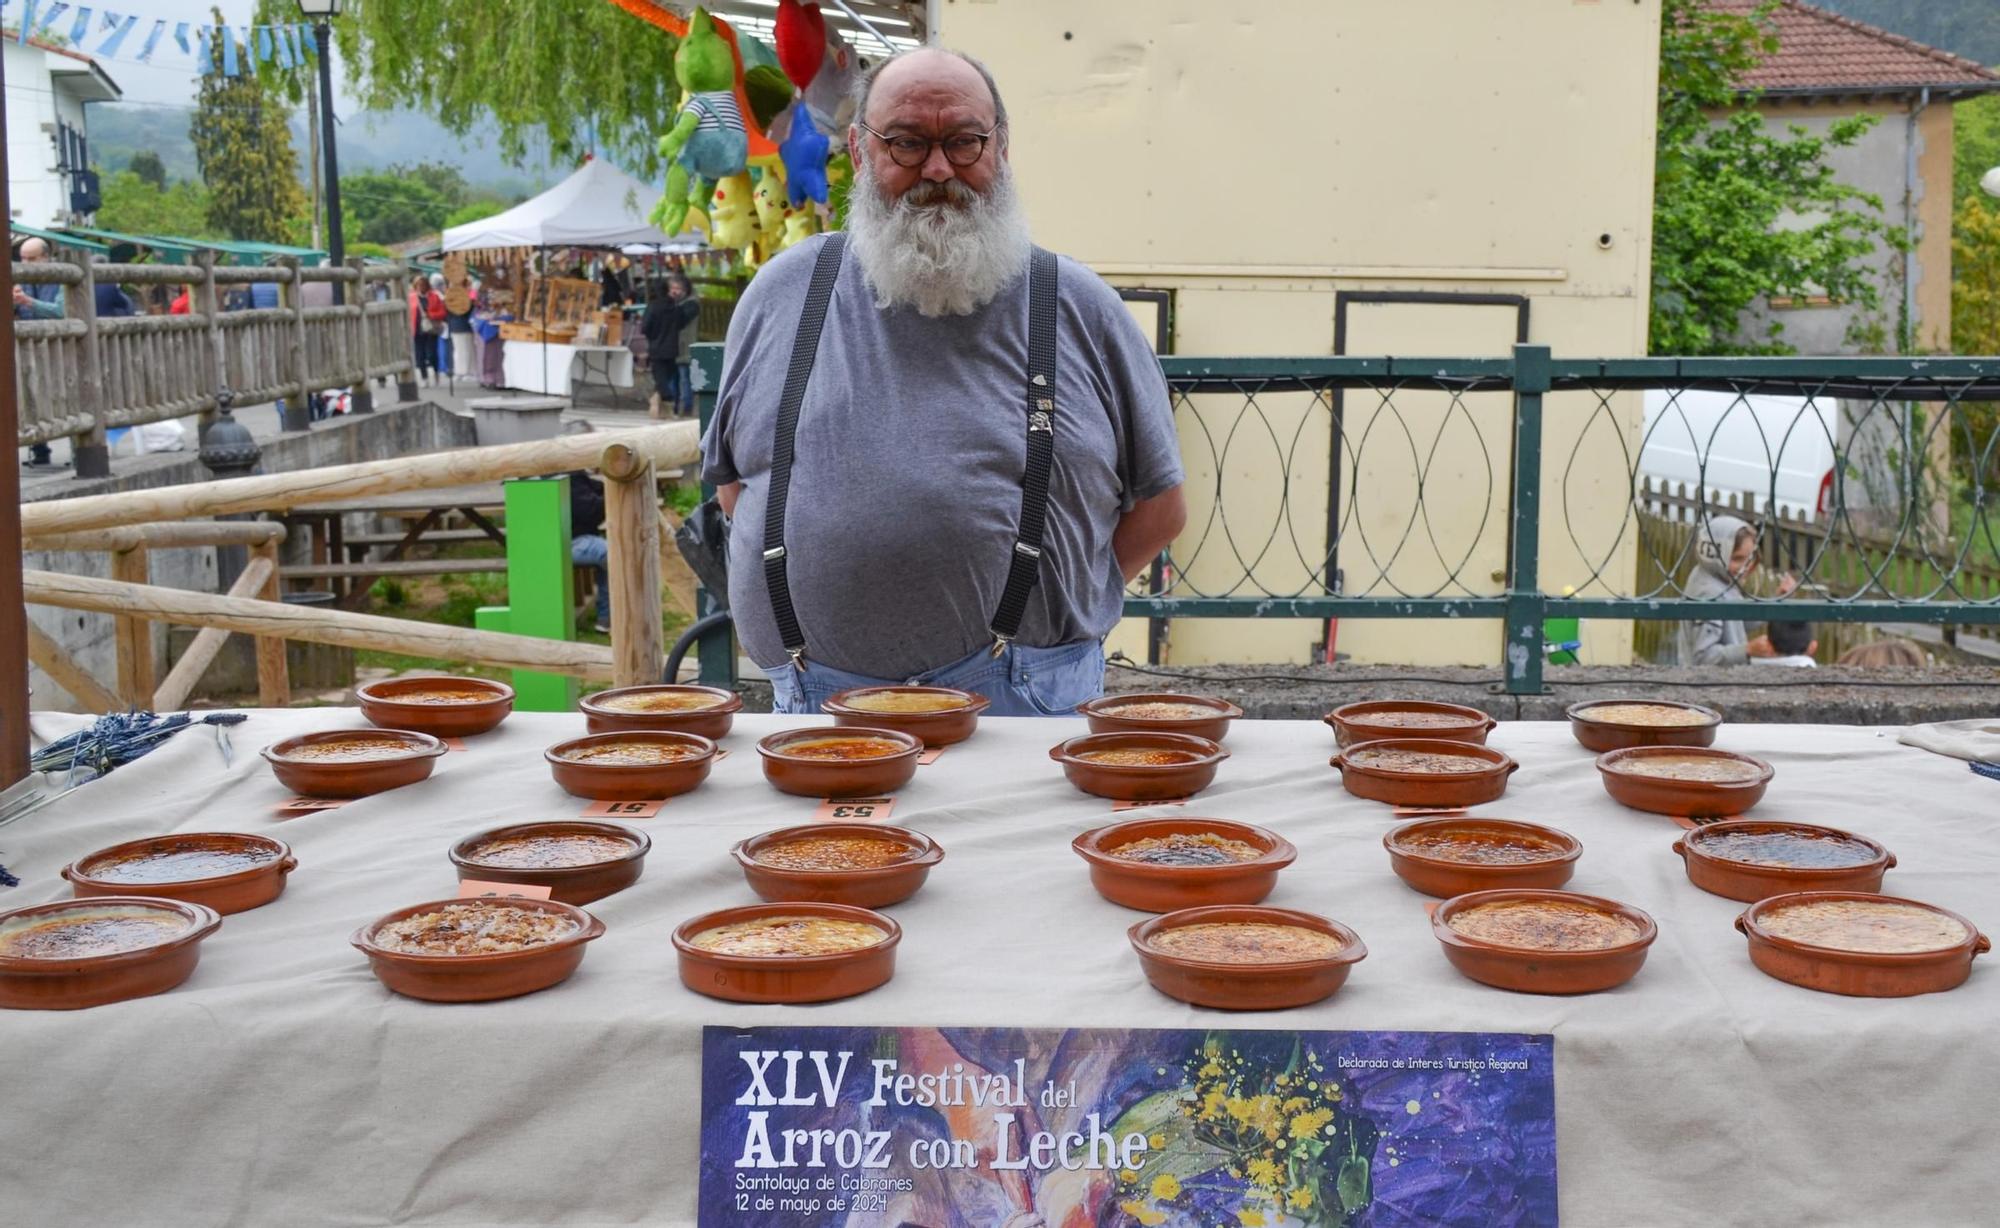 45 Festival del Arroz con Leche en Cabranes